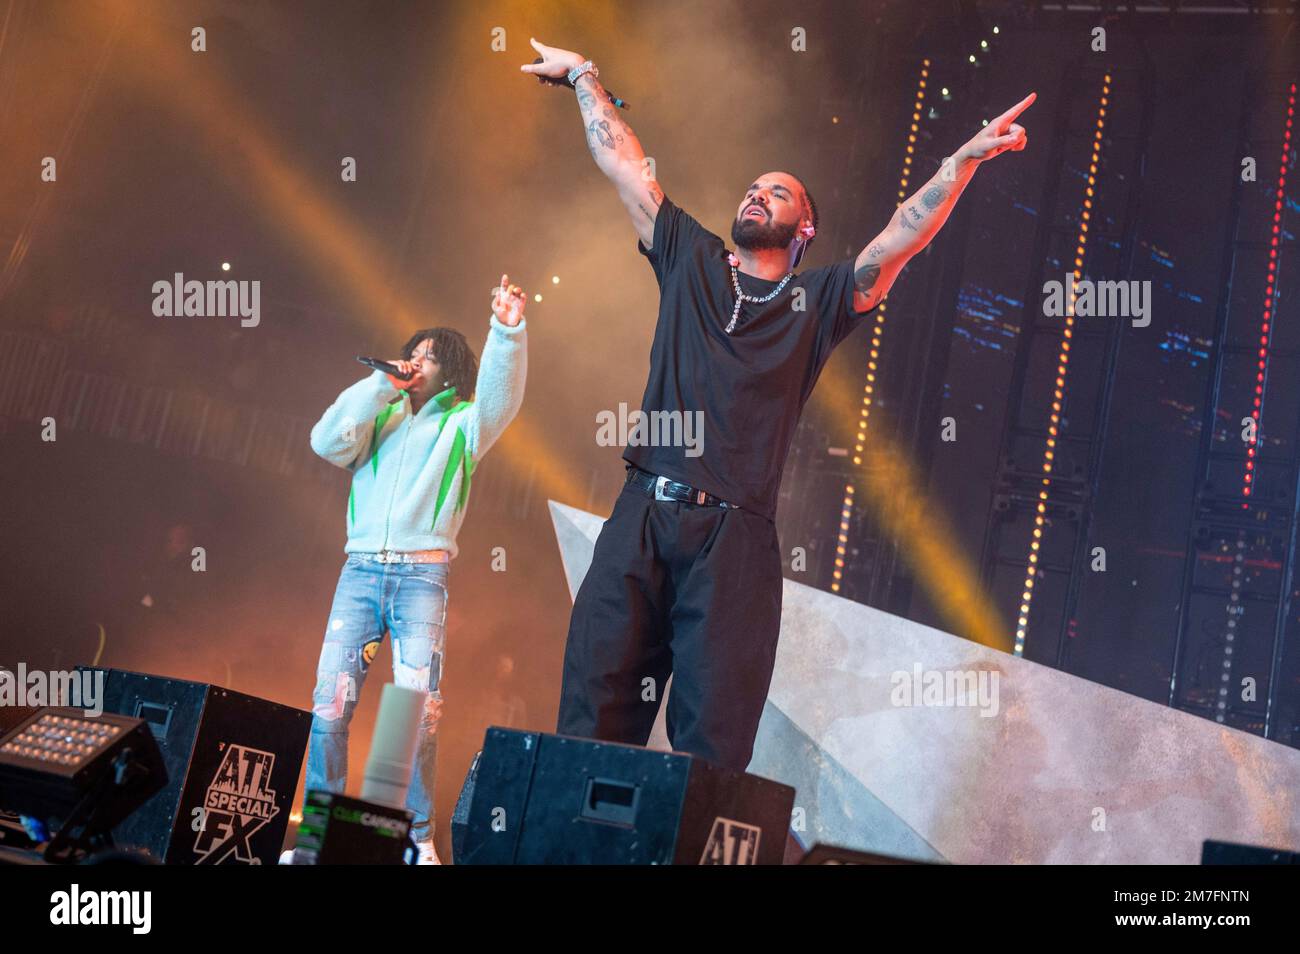 Download Atlanta Rapper 21 Savage Performing On Stage